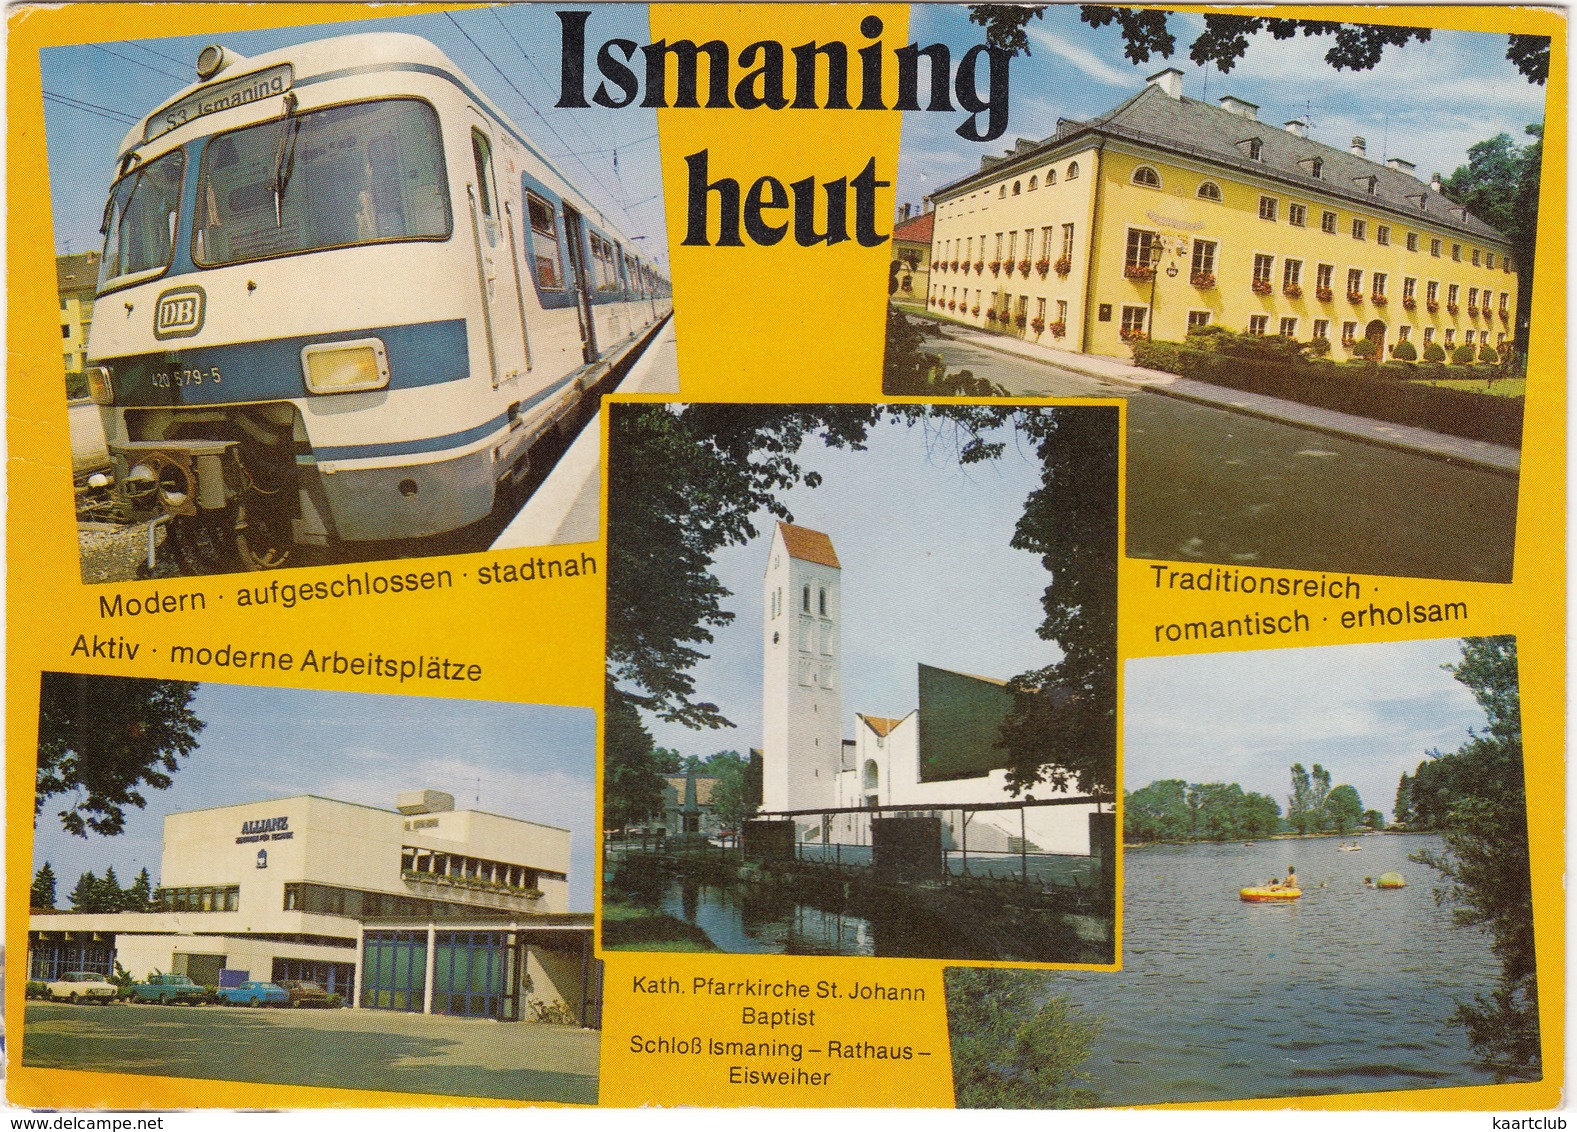 Ismaning Bei München : 'S3 Ismaning' DB (S-Bahn München) - Treinen